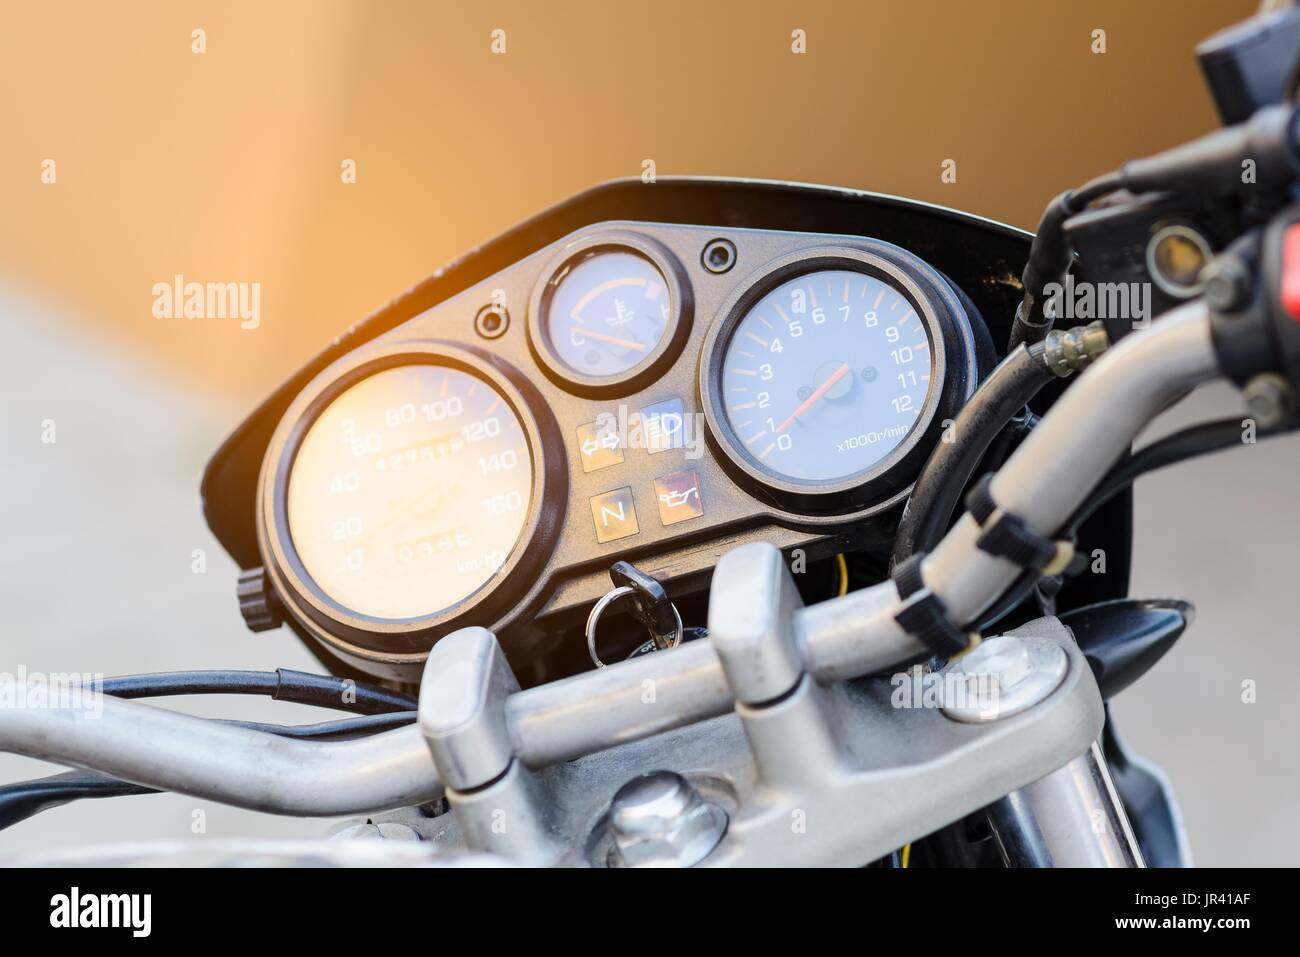 Moto classique panneau de commande avec tachymètre et compteur de tours Banque D'Images